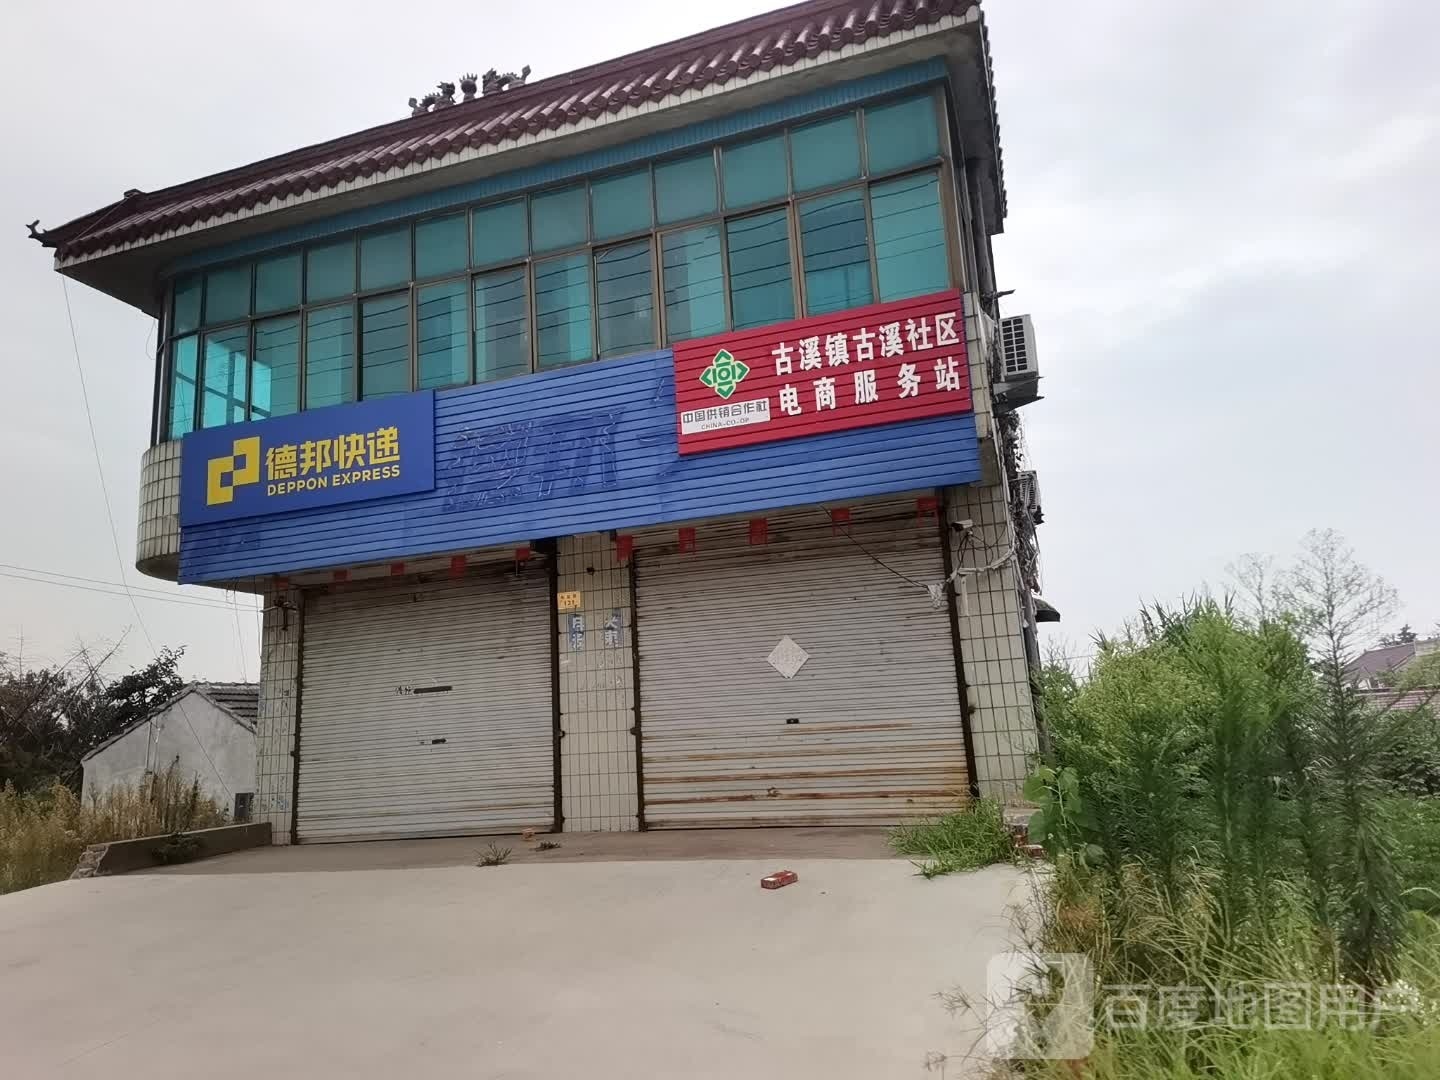 古稀镇古溪社区电商服务站